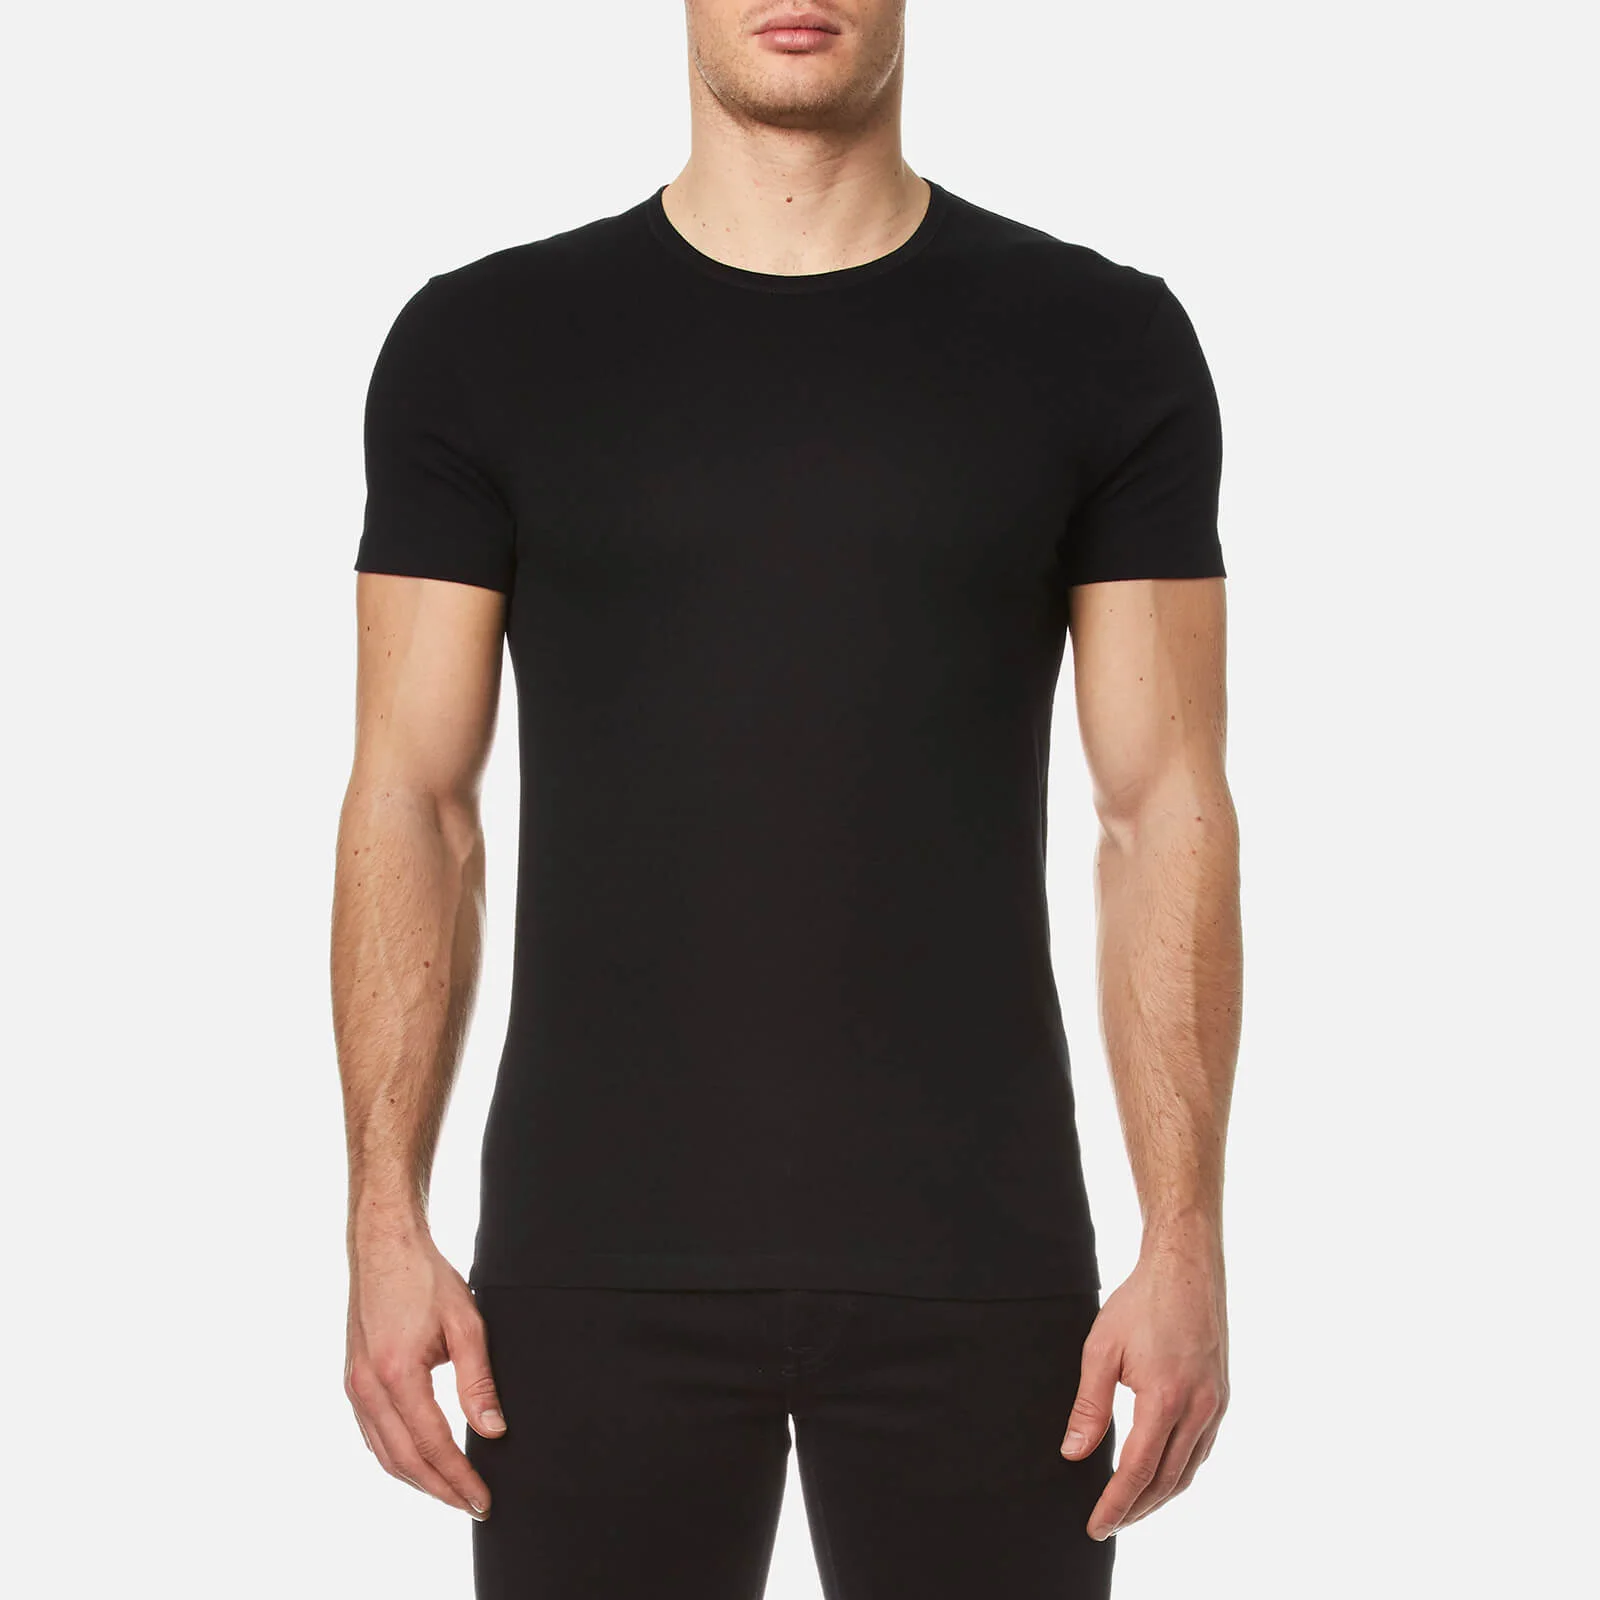 Paul Smith Men's Crew Neck Cotton T-Shirt - Black Image 1